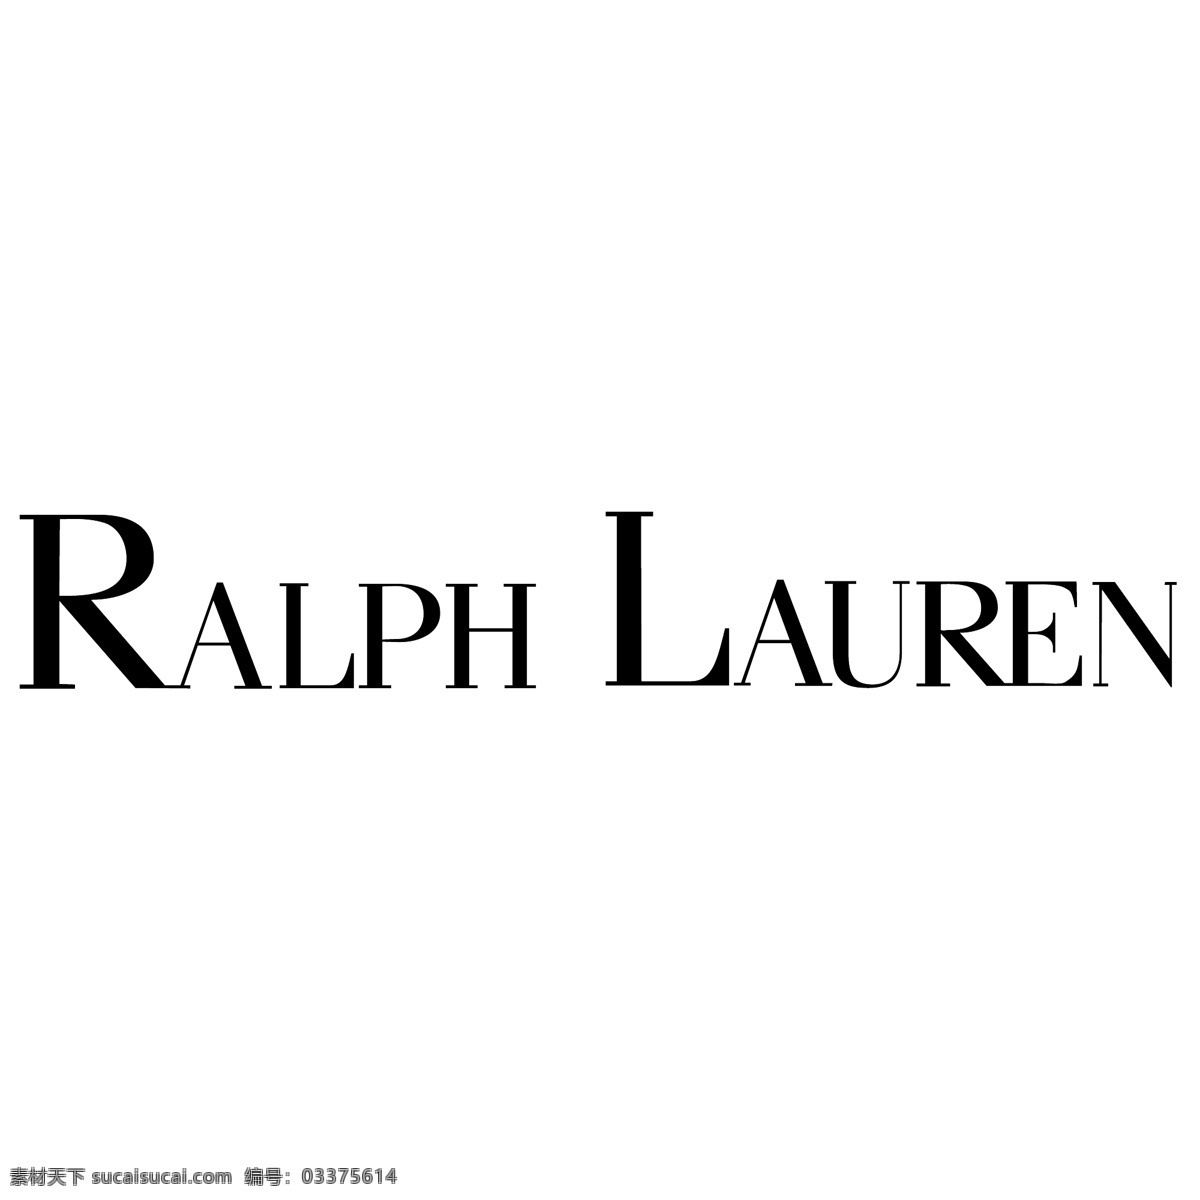 拉尔夫劳伦特 矢量标志下载 免费矢量标识 商标 品牌标识 标识 矢量 免费 品牌 公司 白色